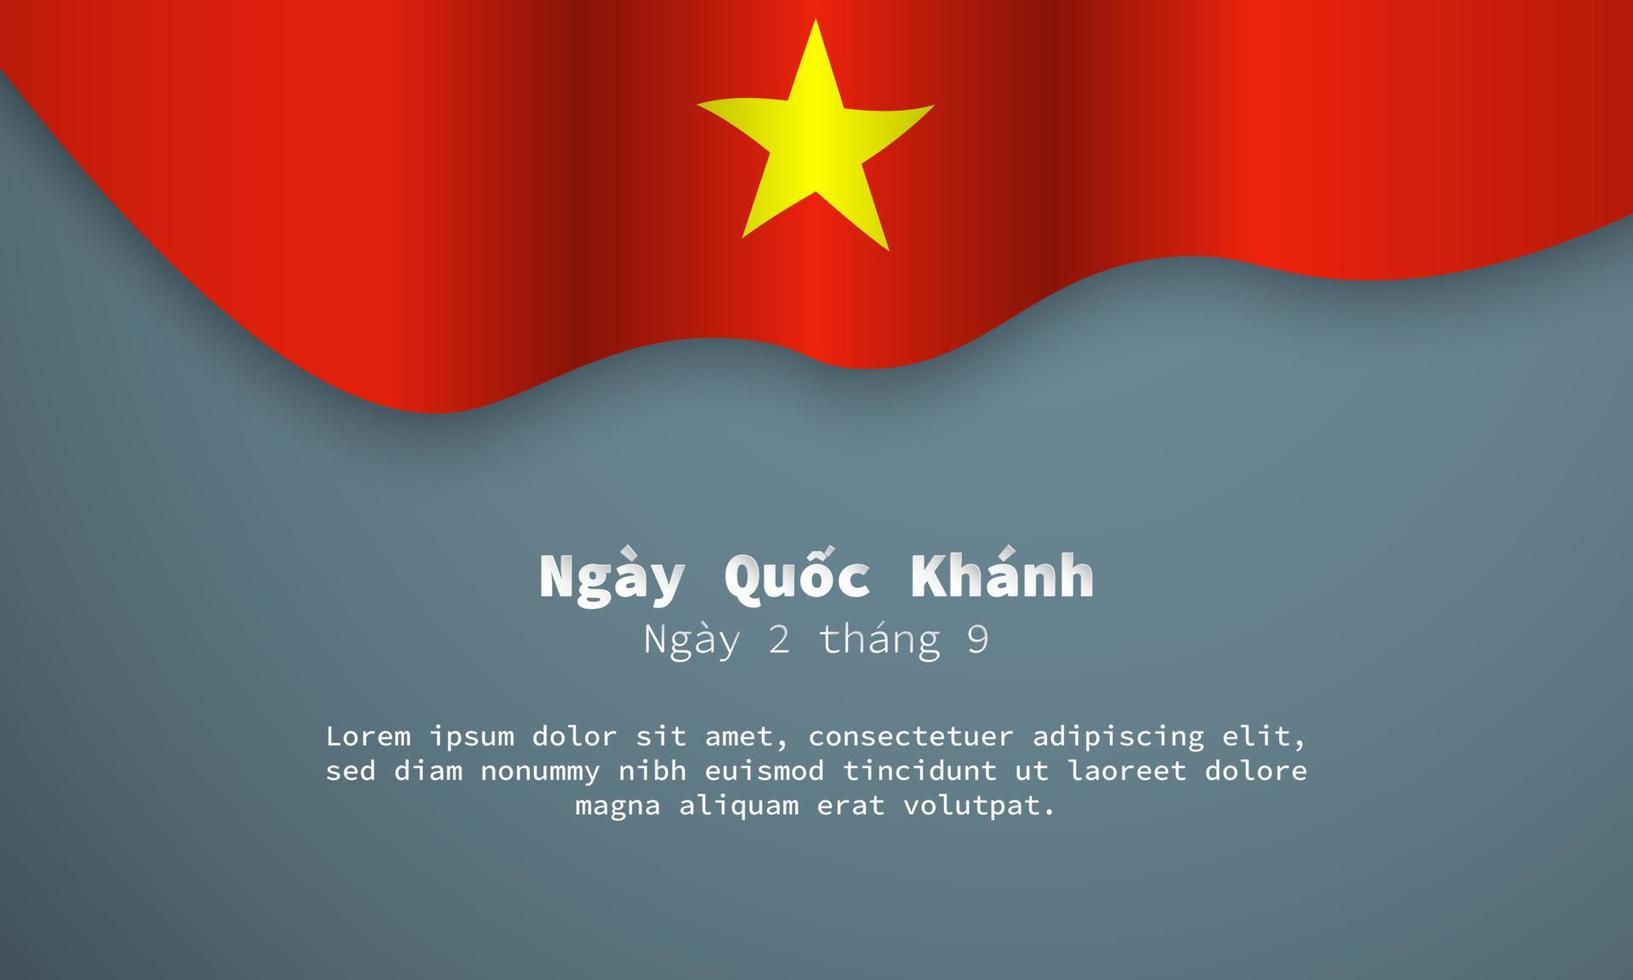 vietnam nationale feestdag achtergrond ontwerpsjabloon. vector